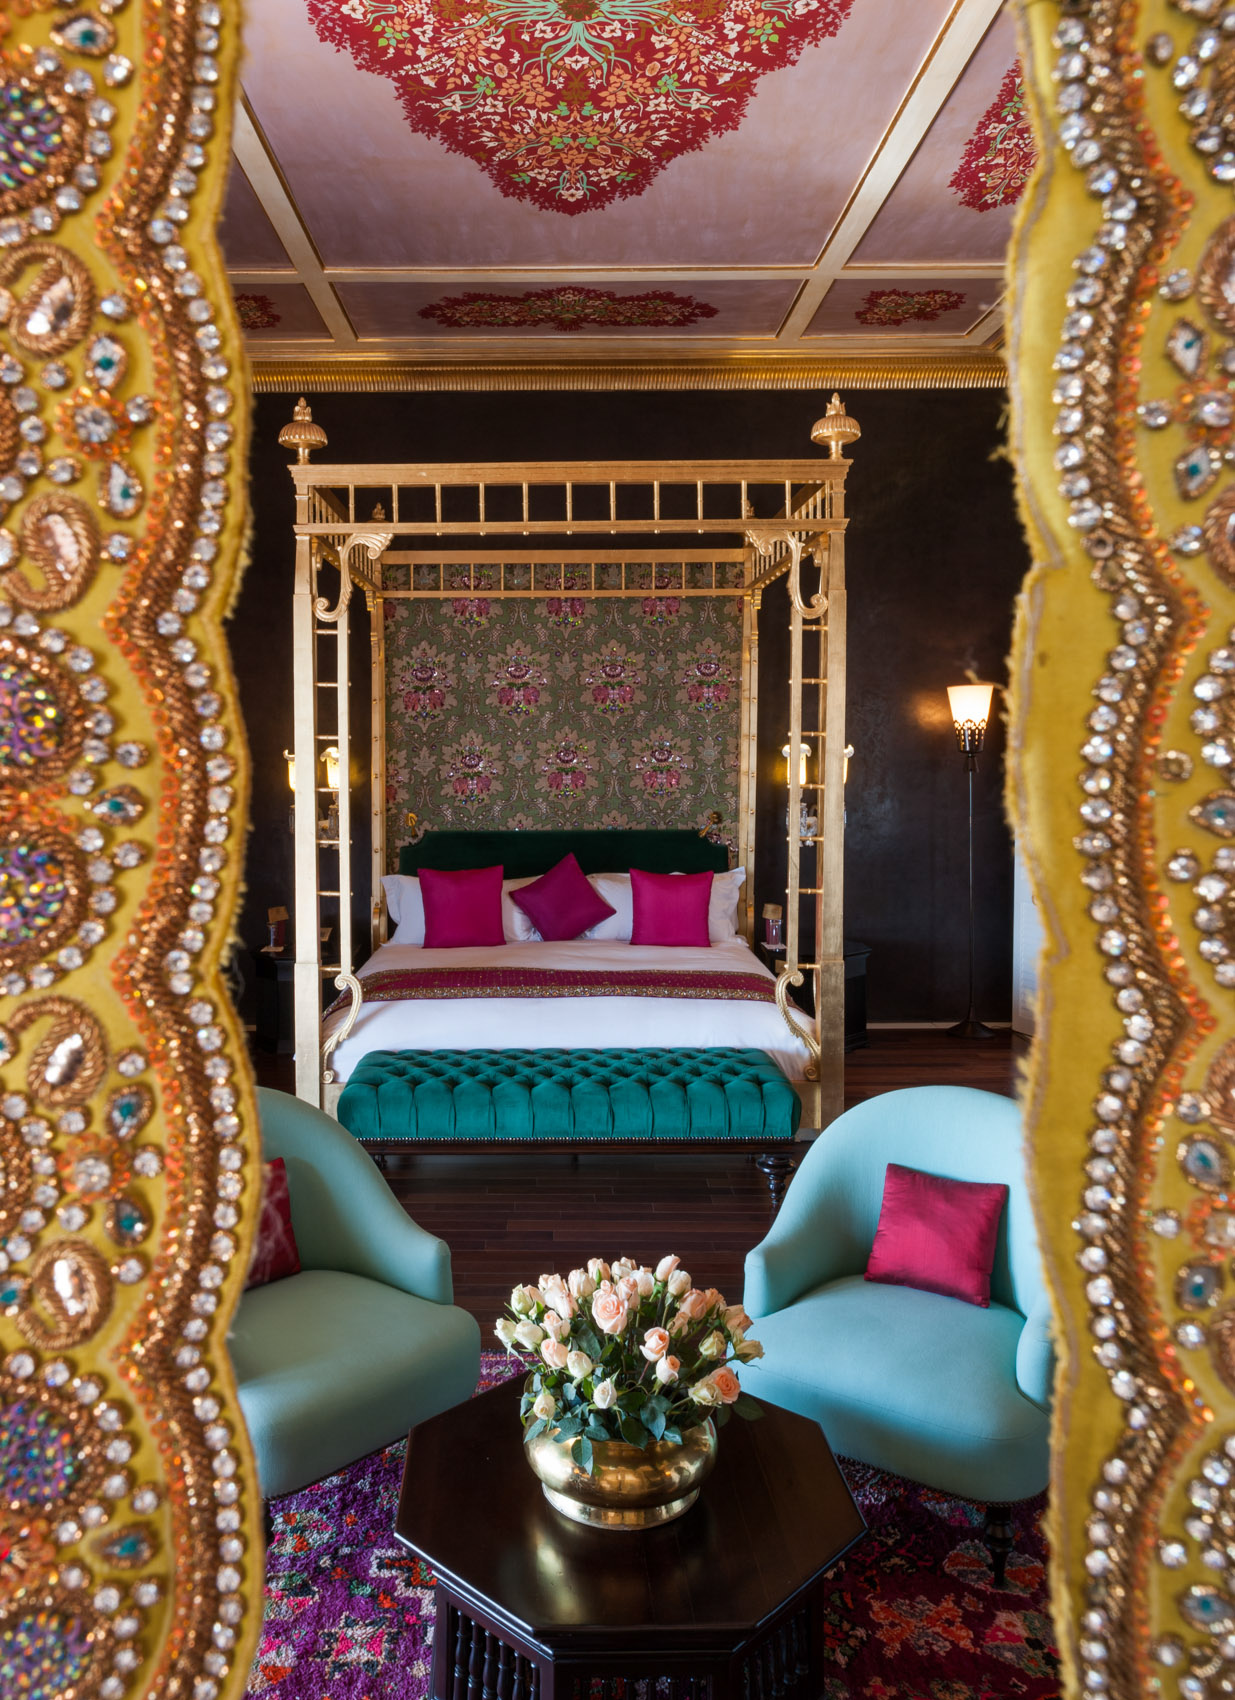 130124-27 Opulent Moroccan bedroom, Marrakech